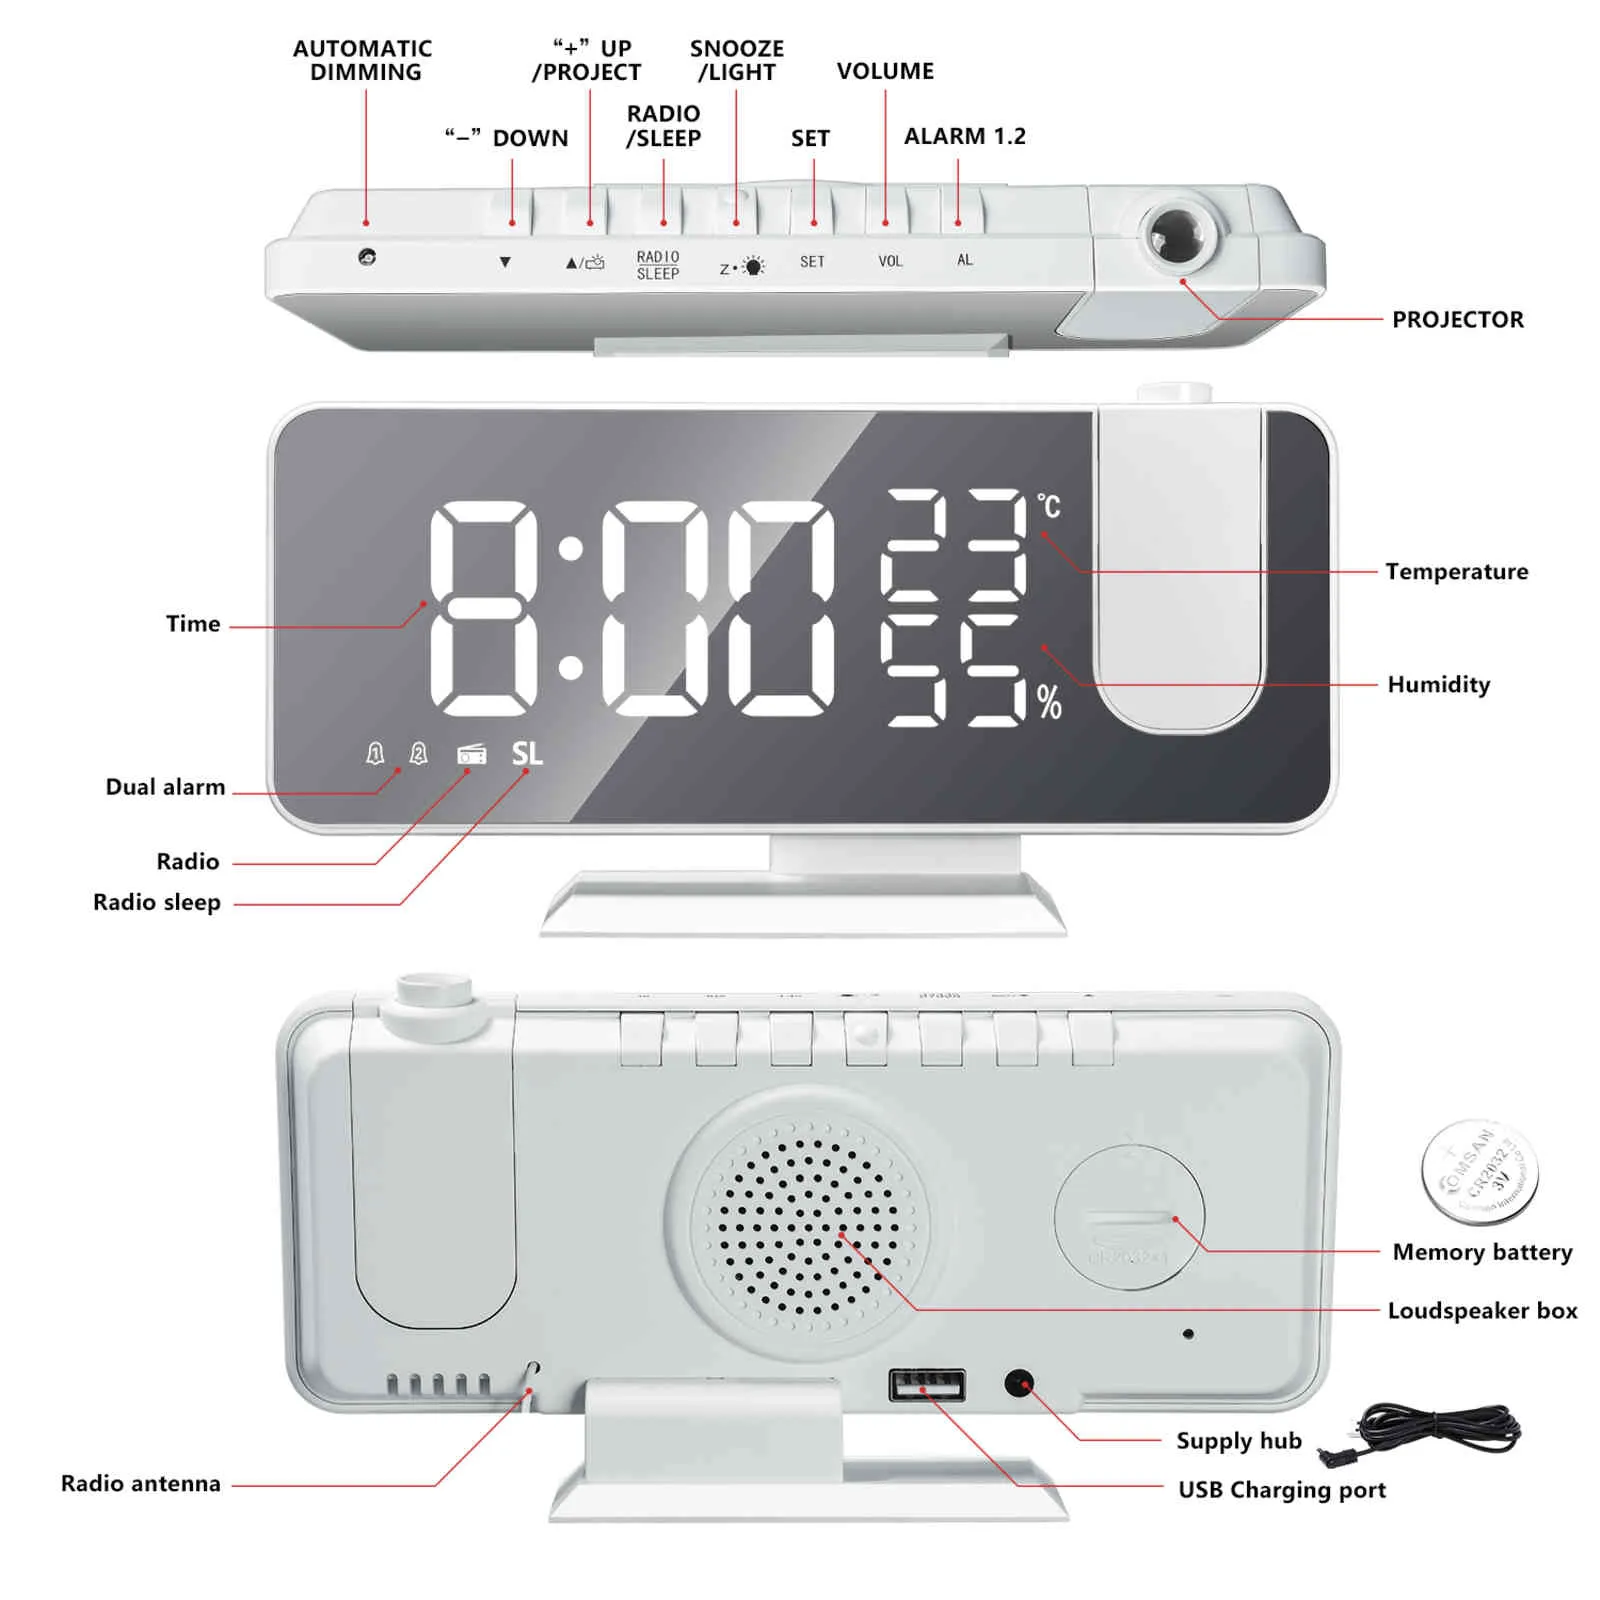 Alarma digital Led Espejo inteligente con radio FM Temperatura Humedad Pantalla Proyección de tiempo Despertador de escritorio Relojes